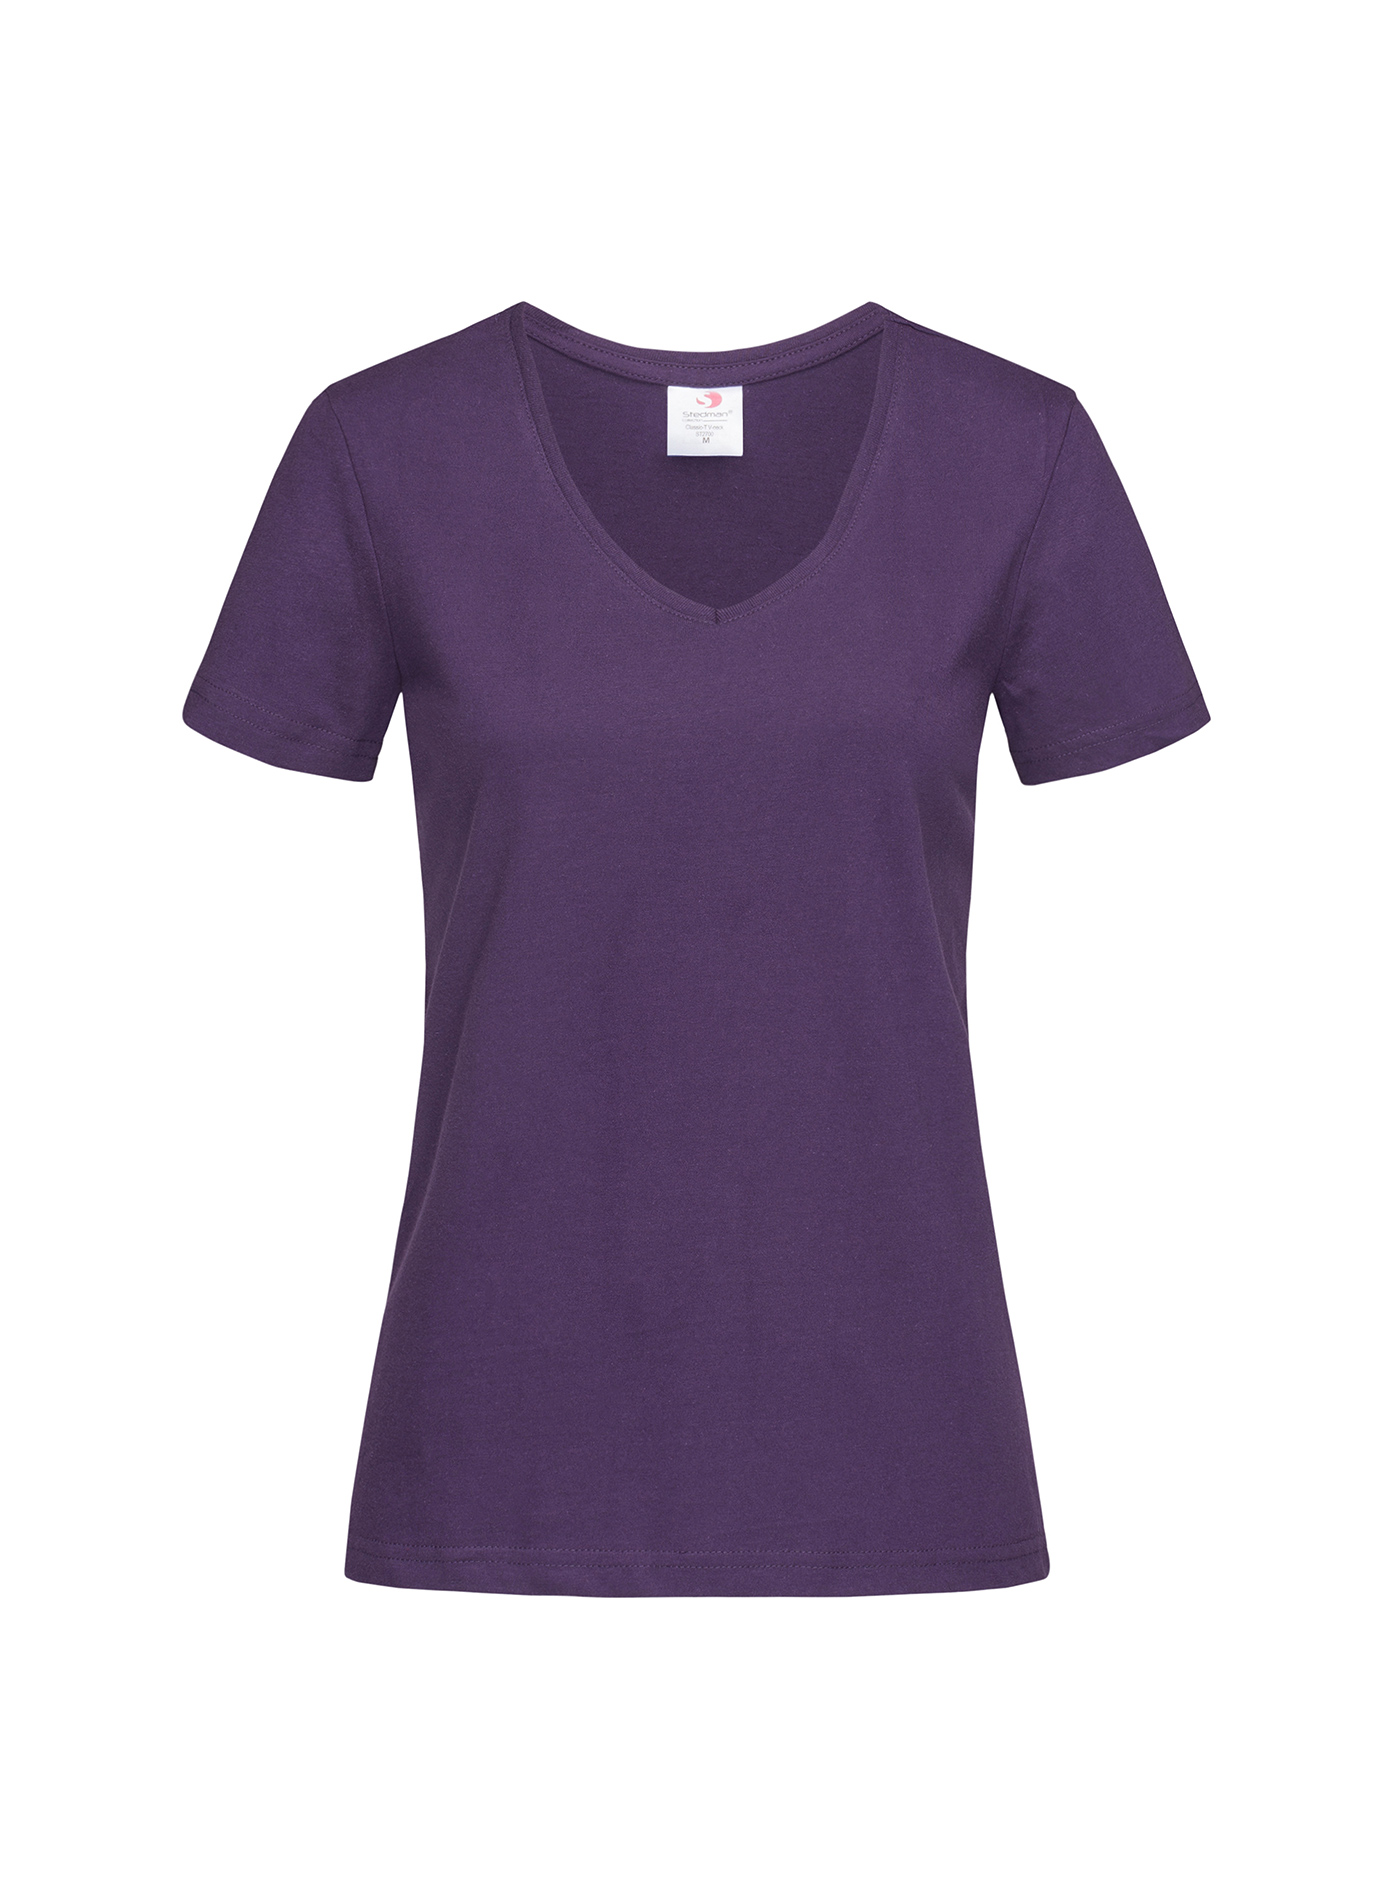 Dámské tričko s V-výstřihem Stedman - Tmavě fialová XL